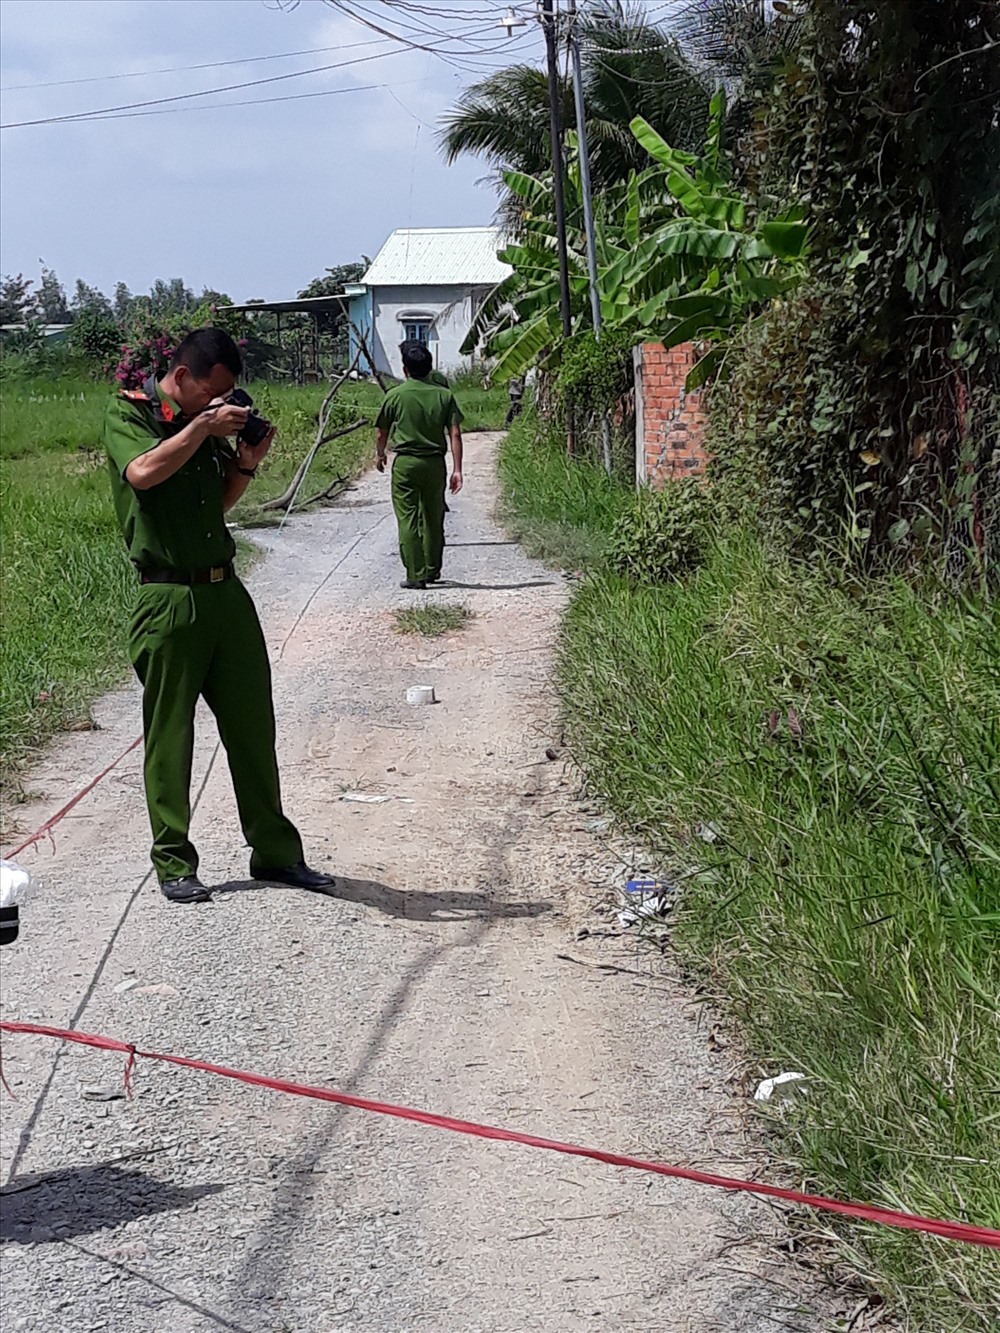 Lực lượng cảnh sát hình sự công an tỉnh đang điều tra hiện trường vụ án, nơi anh Sơn bị cướp giết.